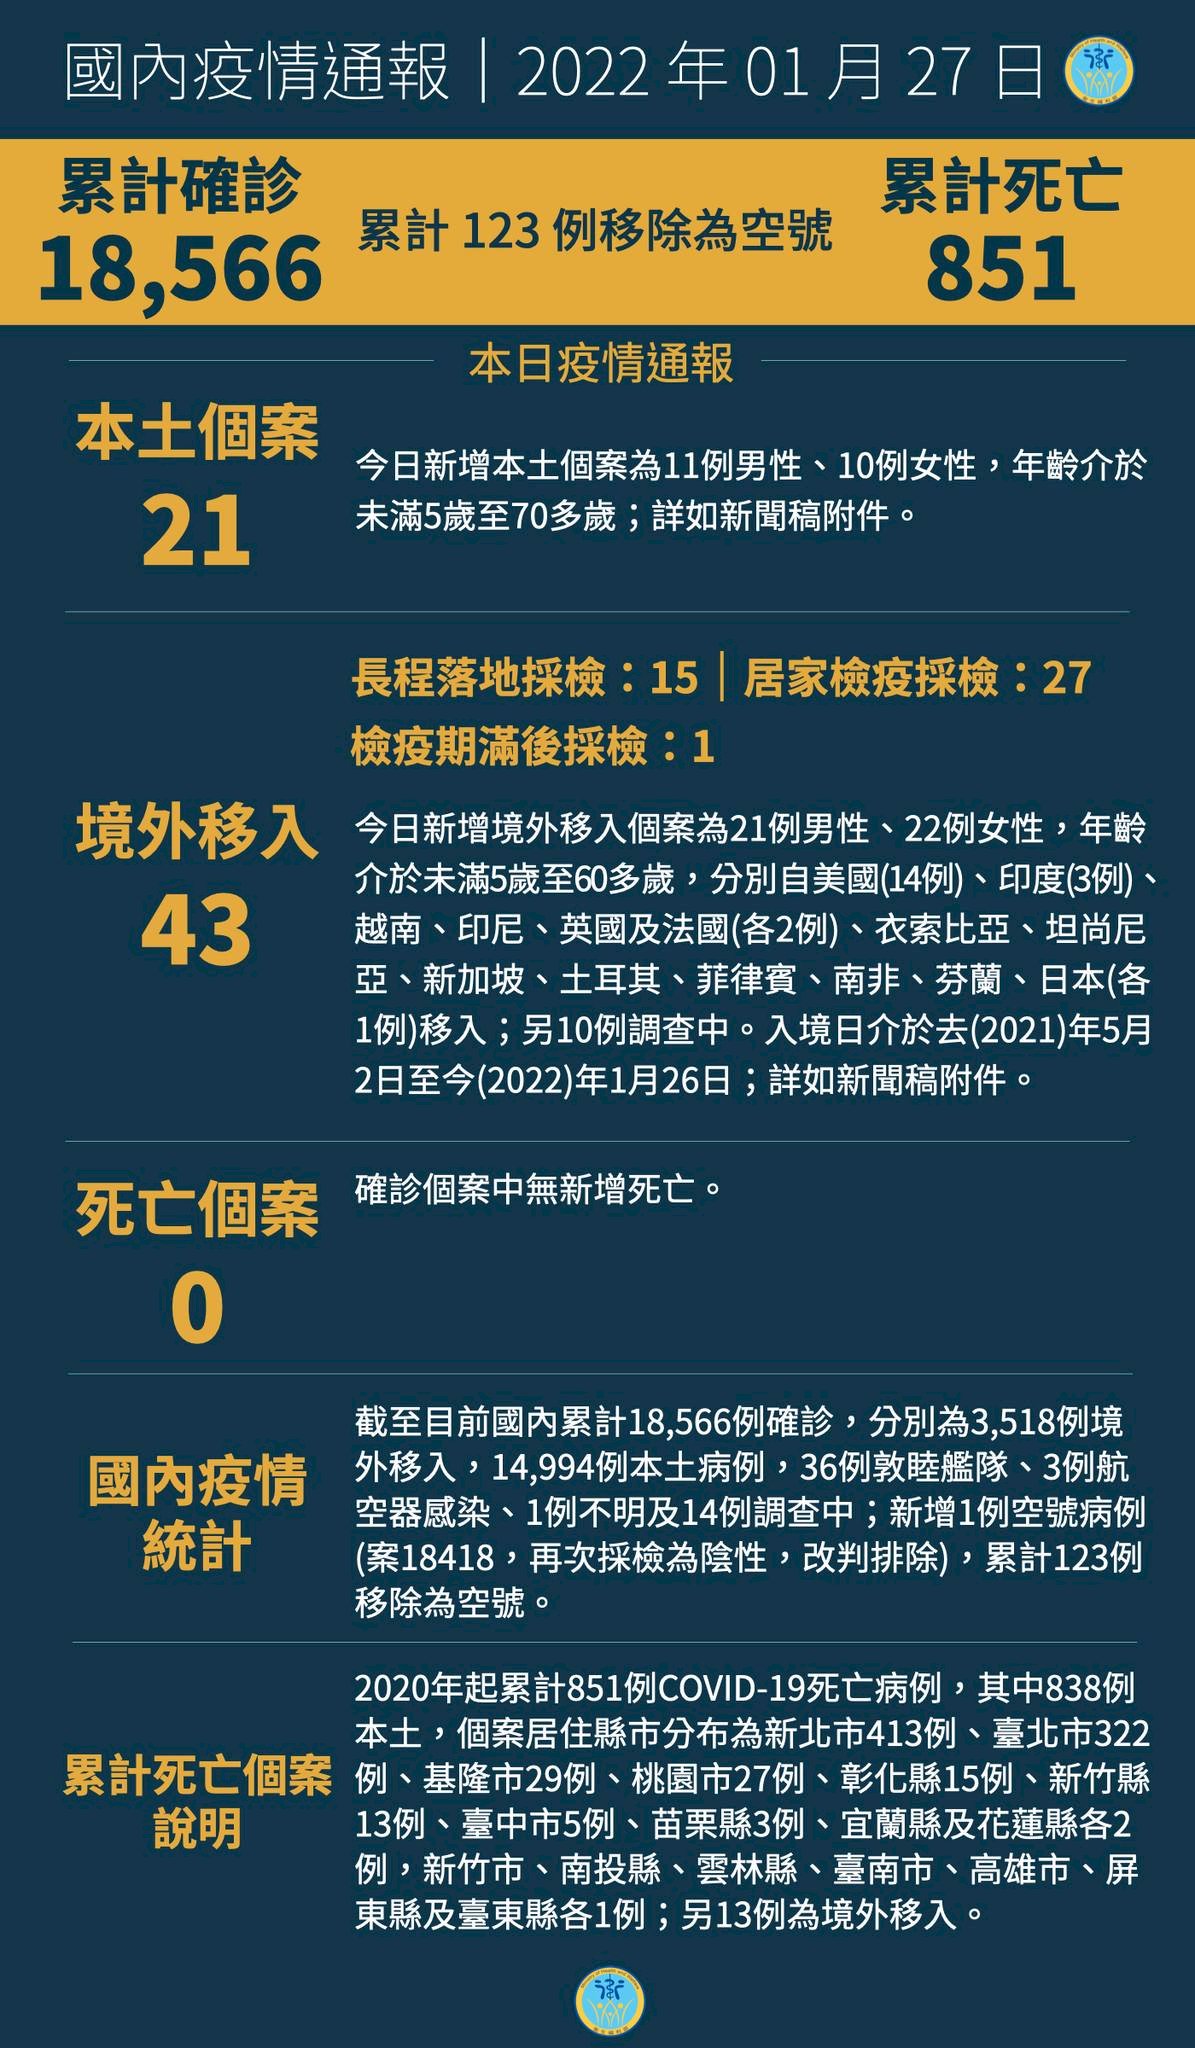 27/1, Đài Loan ghi nhận thêm 21 ca nhiễm COVID-19 nội địa, 43 ca nhiễm từ nước ngoài